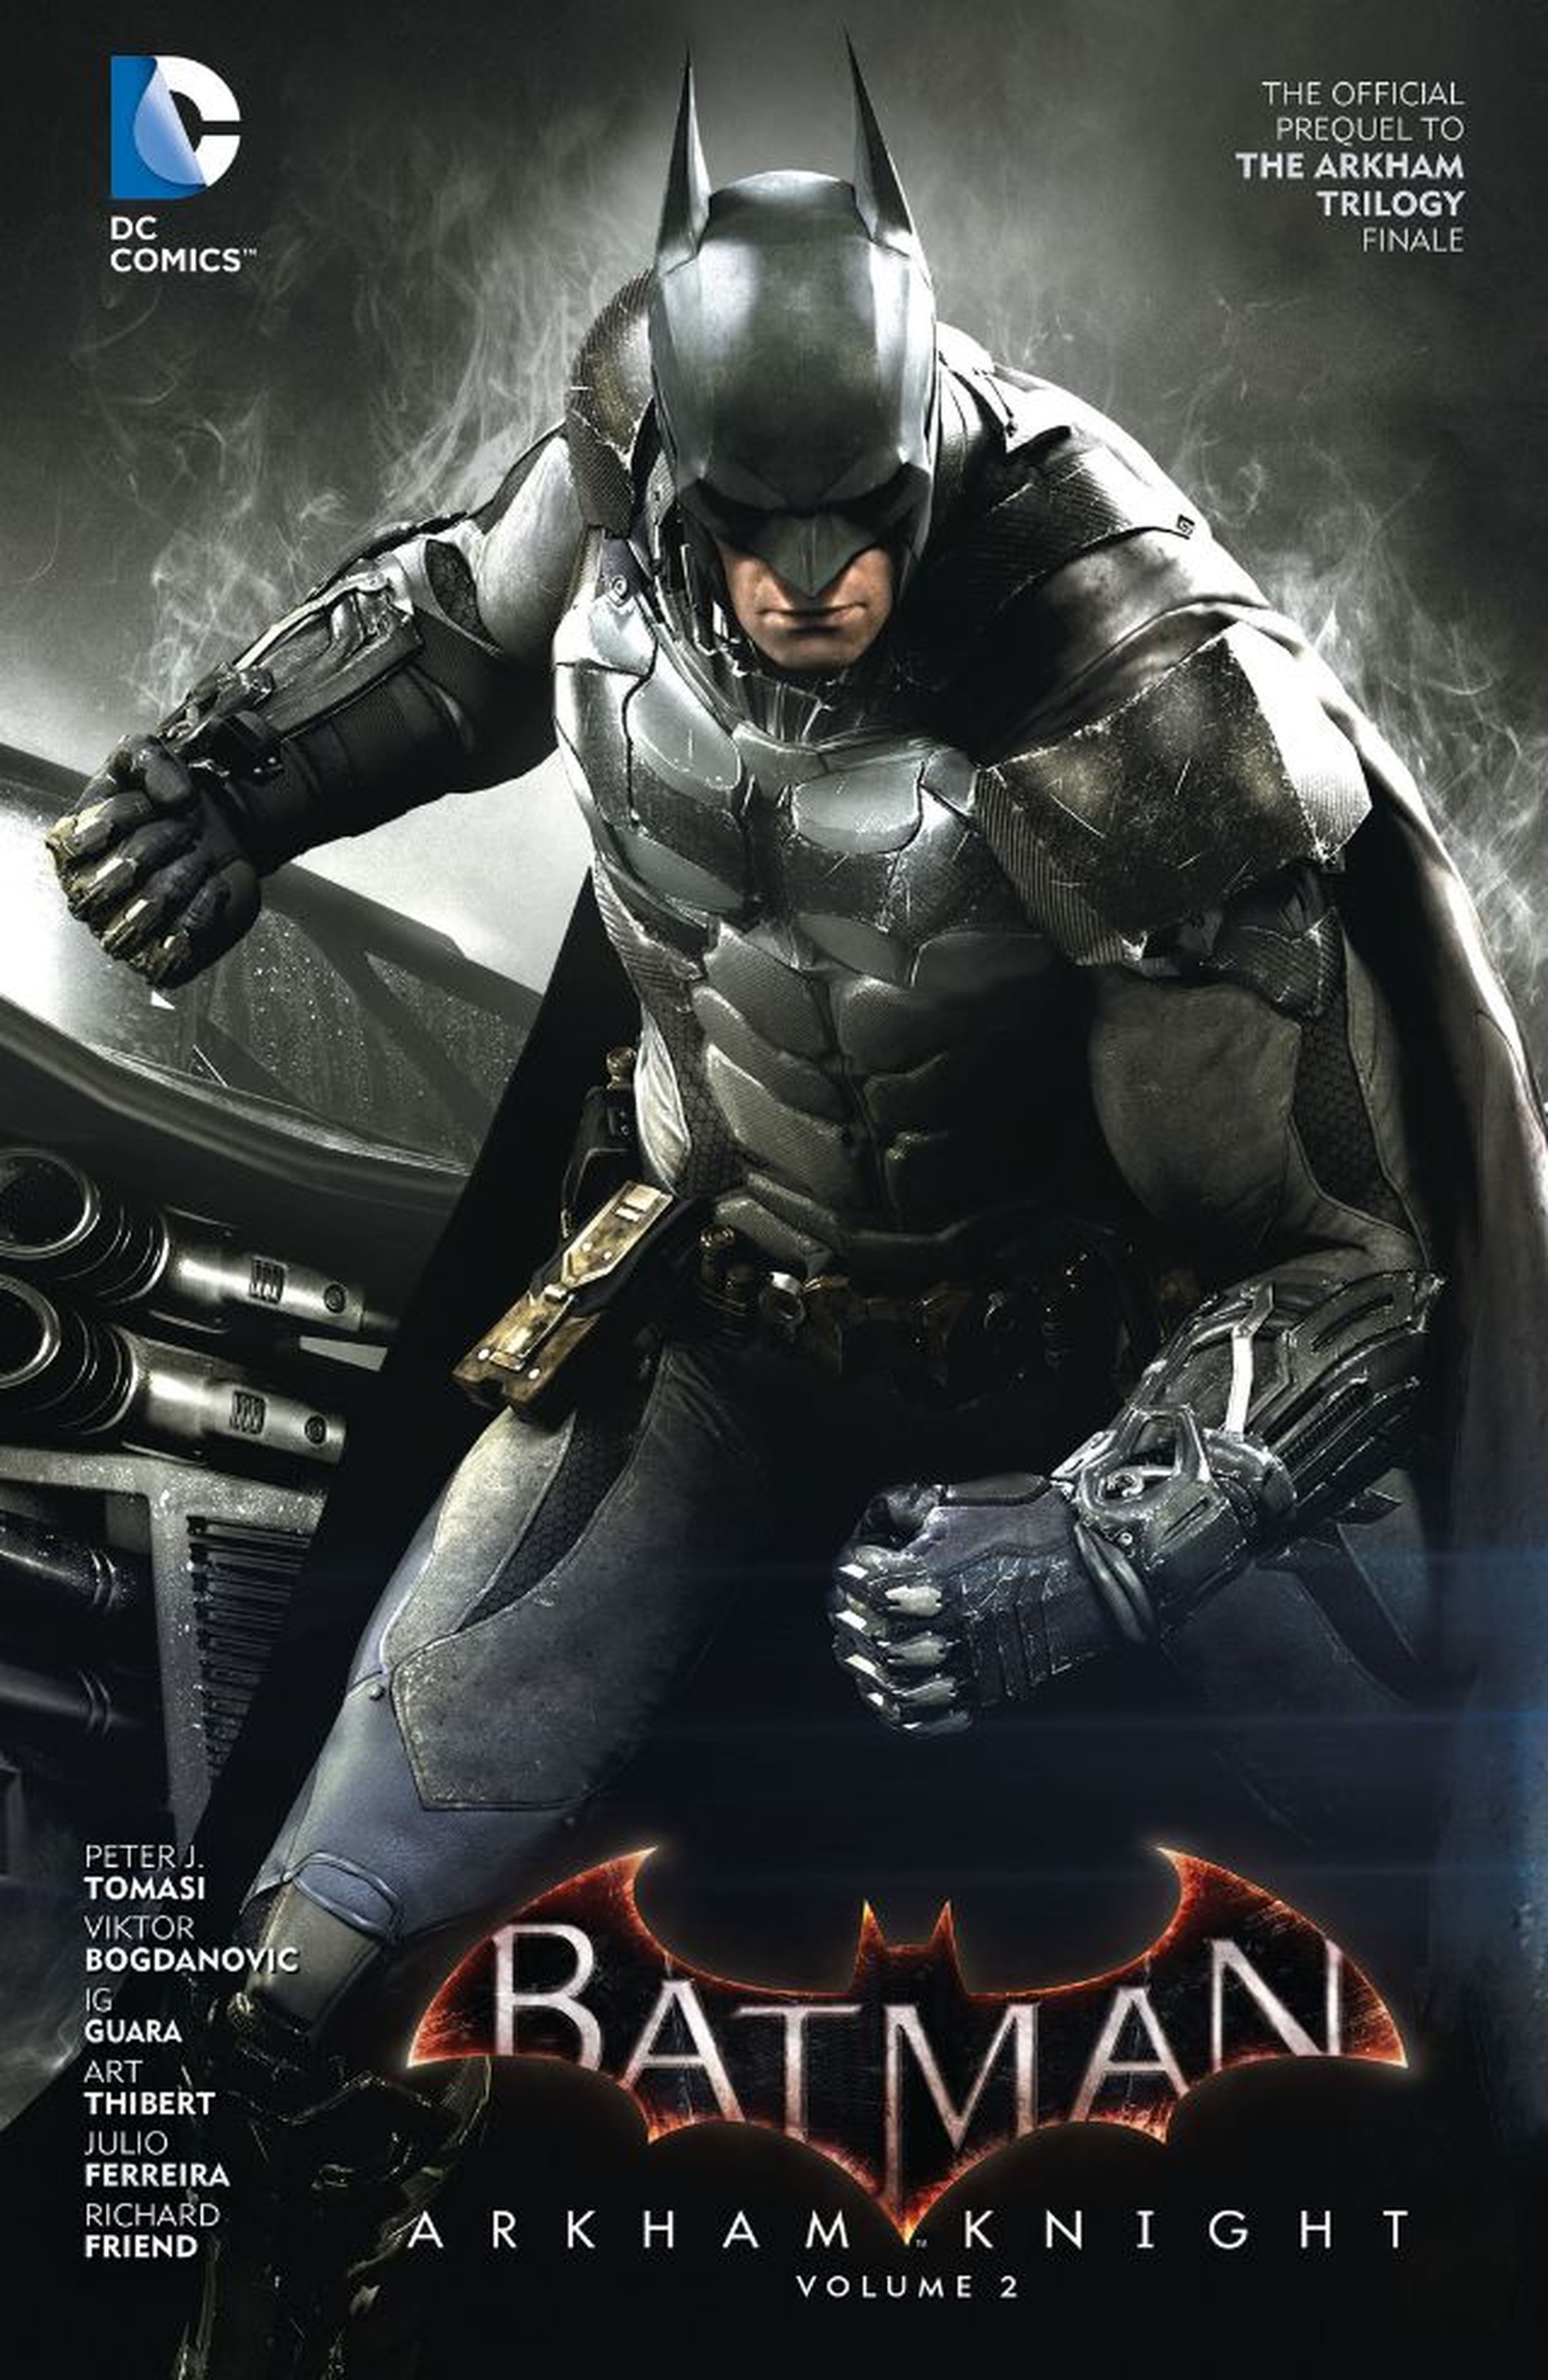 Batman Arkham Knight vol 2